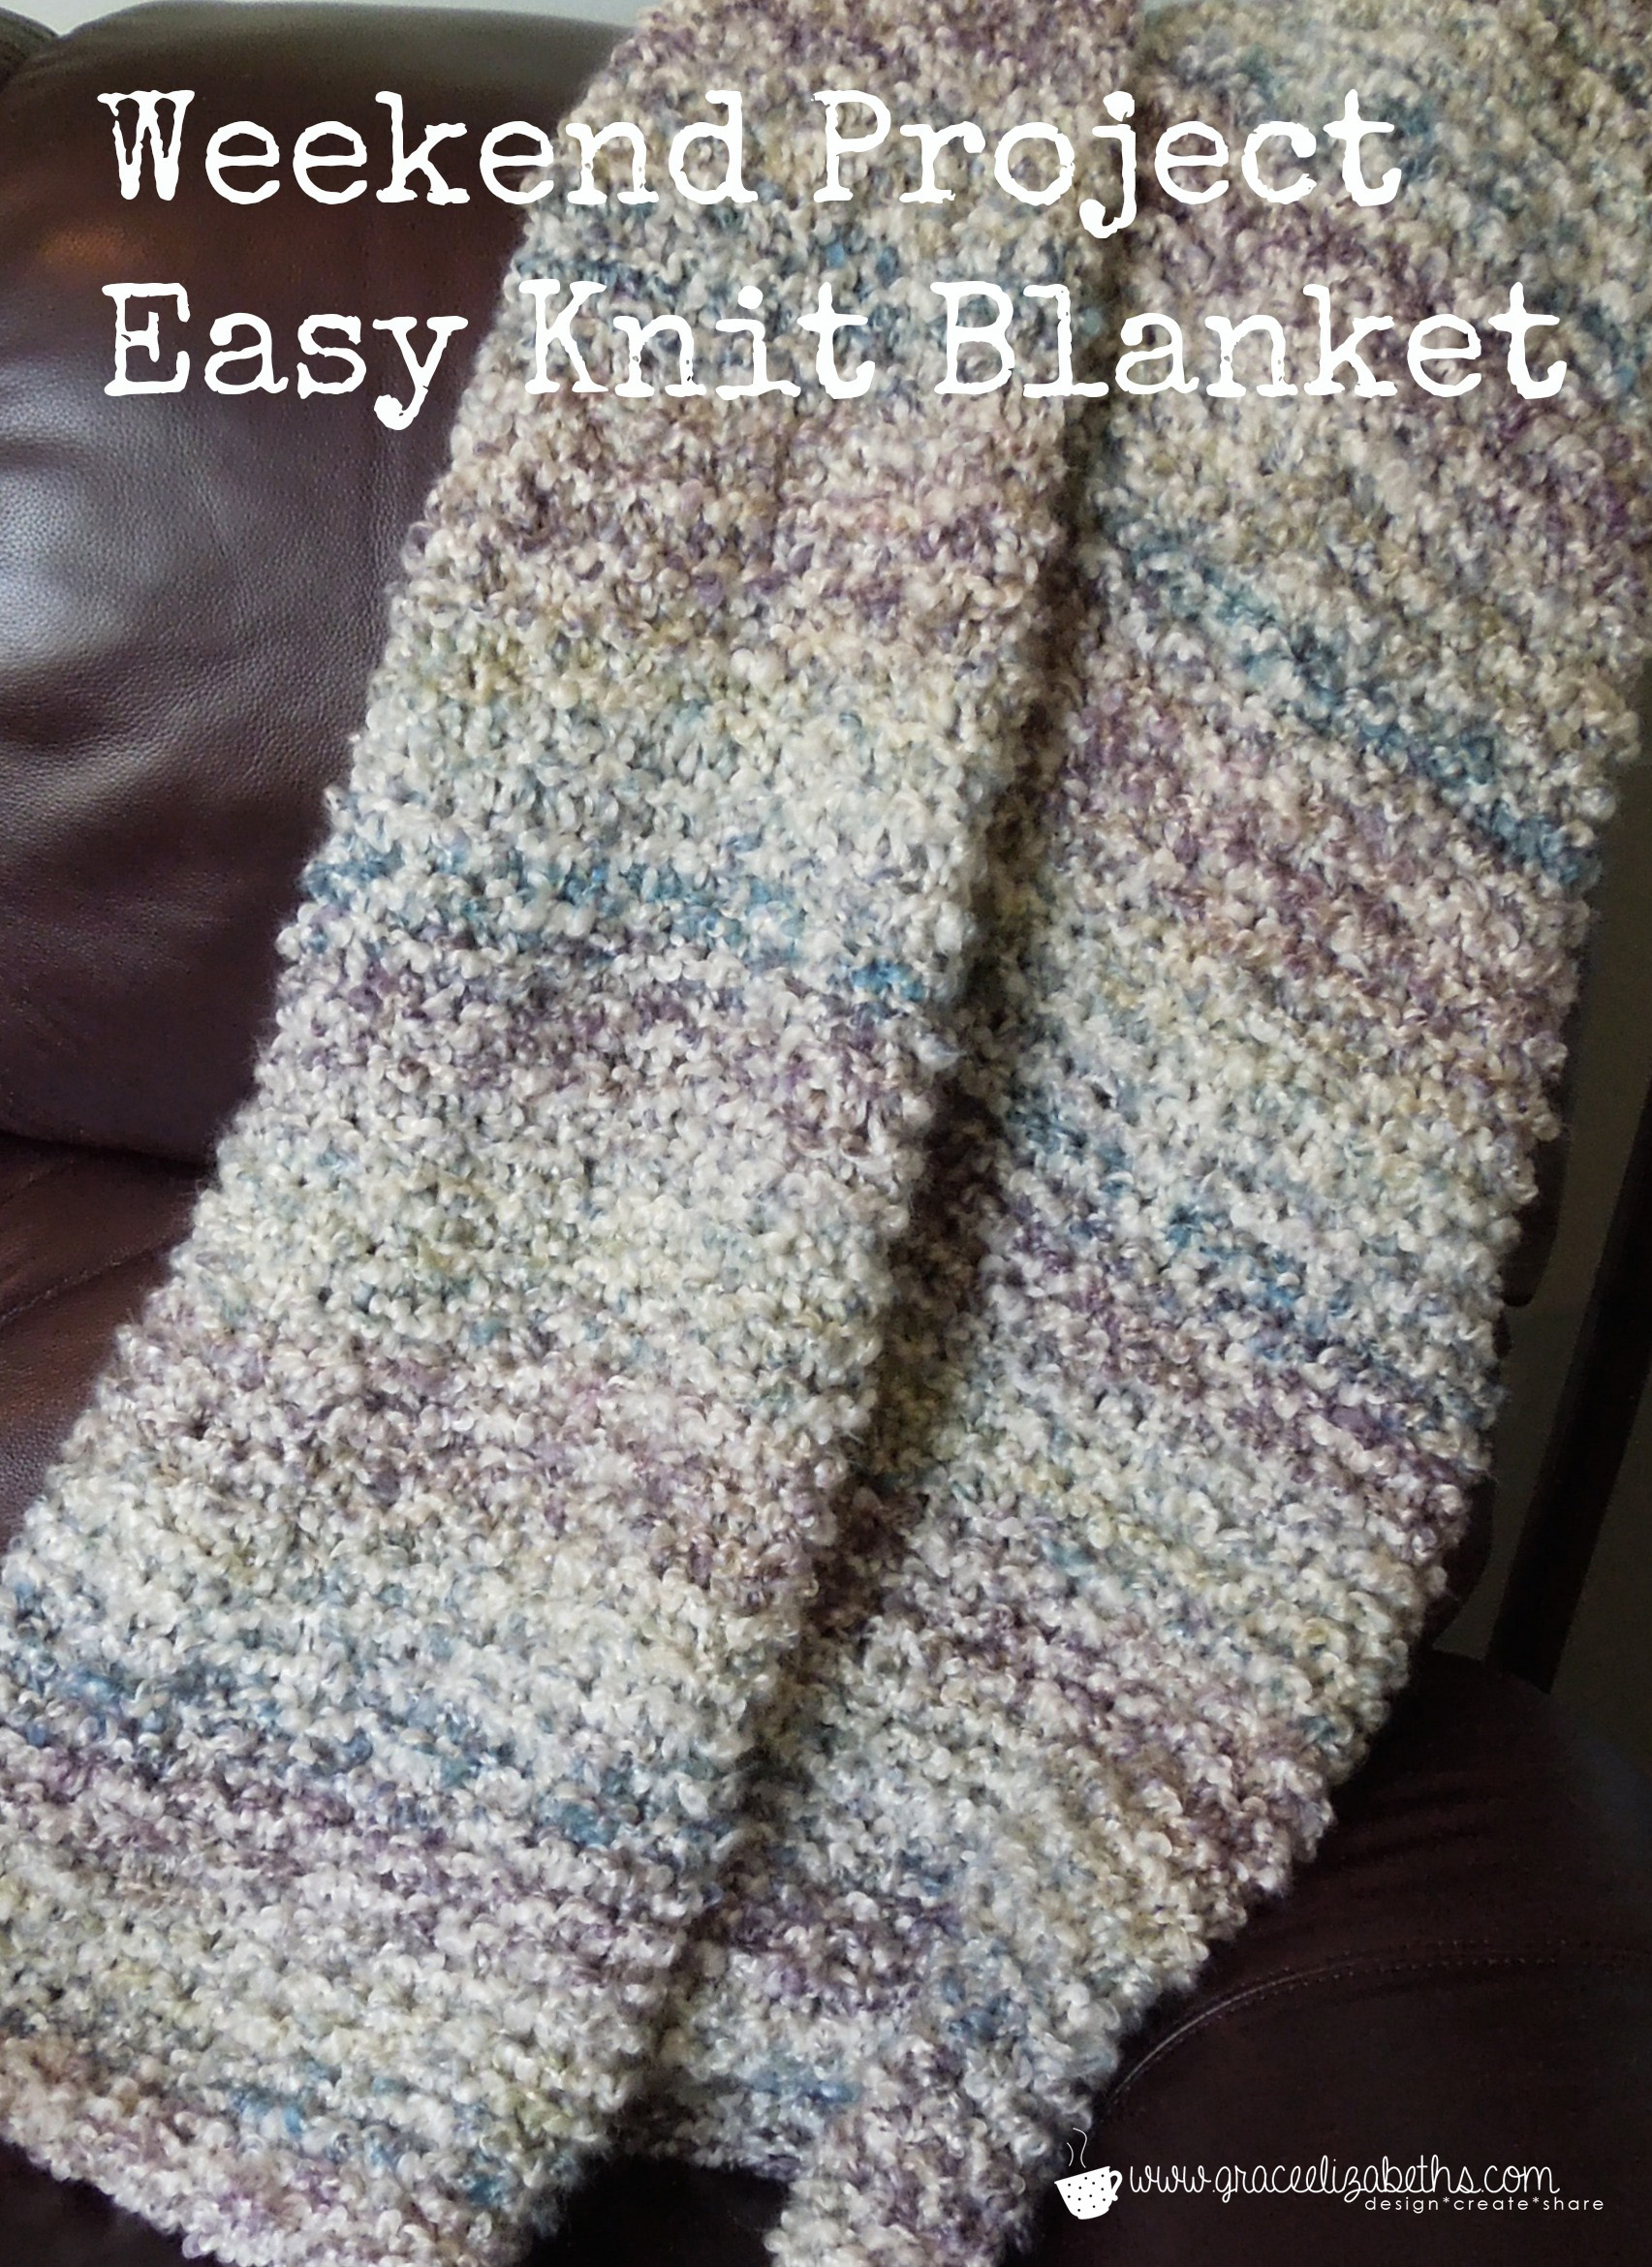 Knit Afghan Patterns Free Weekend Project Free Easy Knit Blanket Pattern Grace Elizabeths